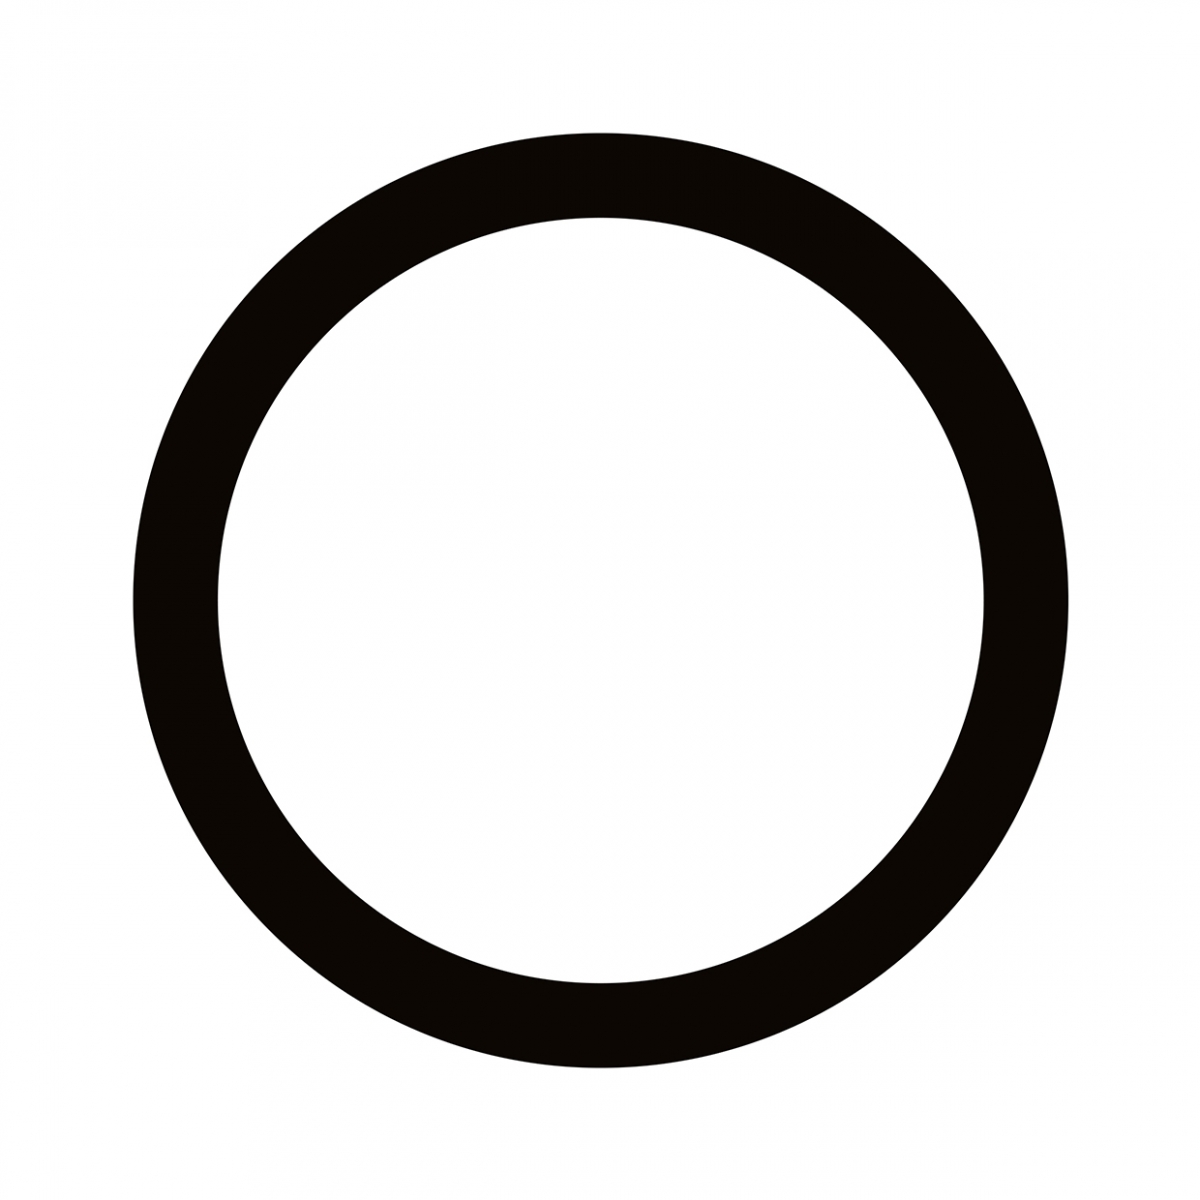 Imagen en la que se ve un círculo con el trazo en color negro